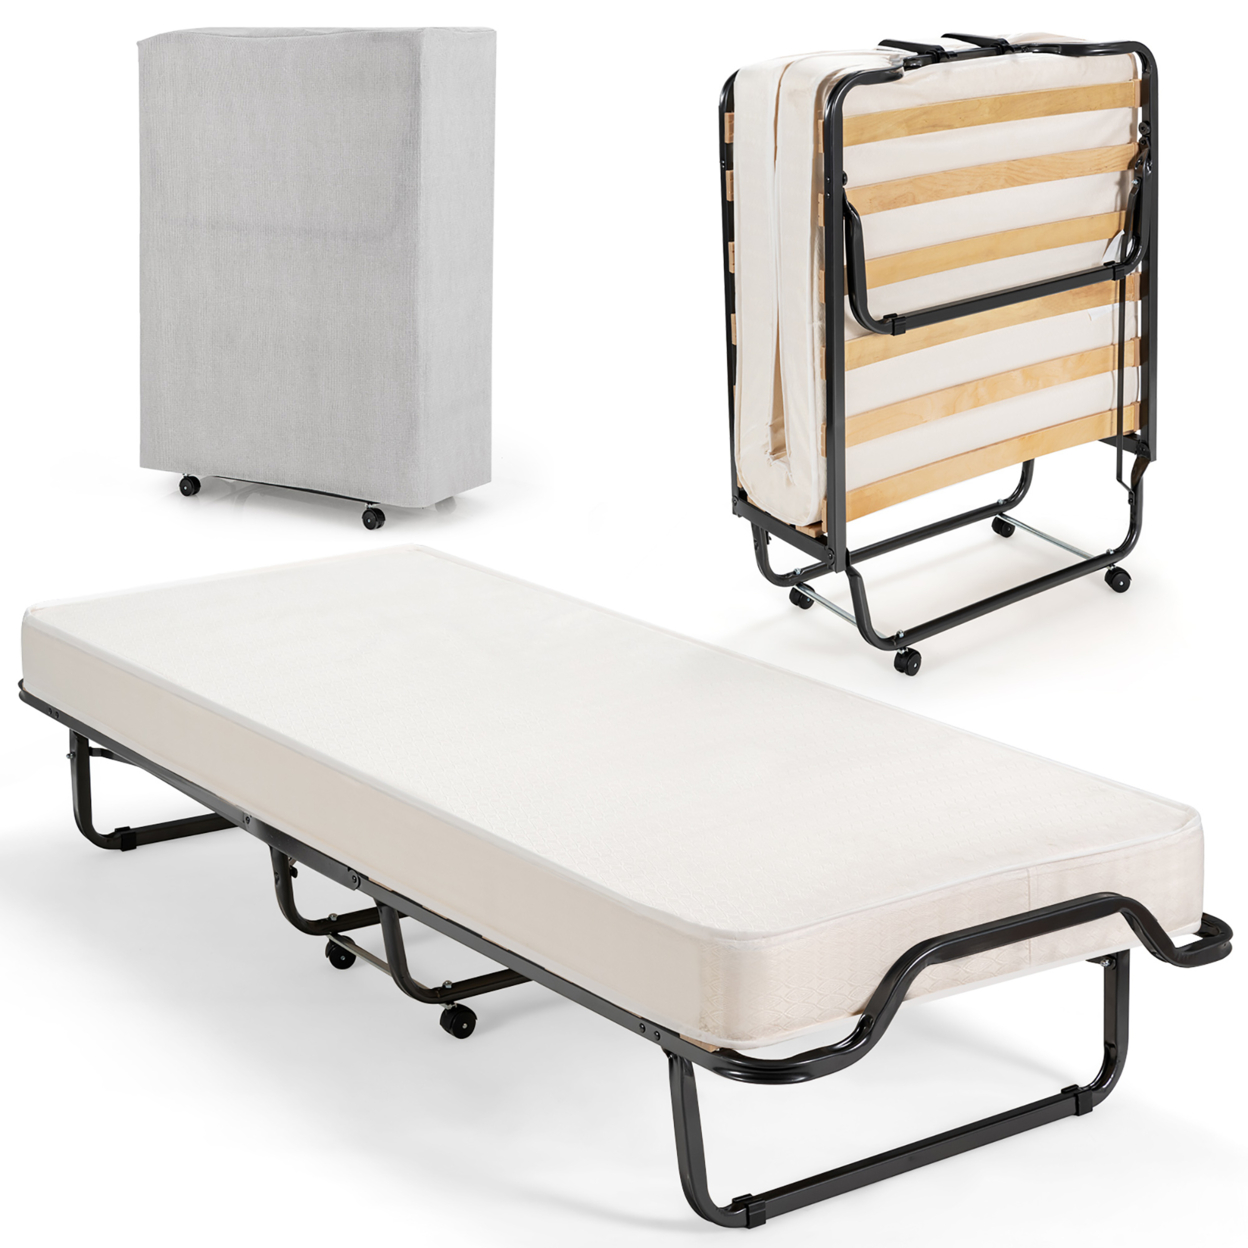 Portable Rollaway Guest Bed Folding Bed W/ Mattress Memory Foam & Dustproof Cover